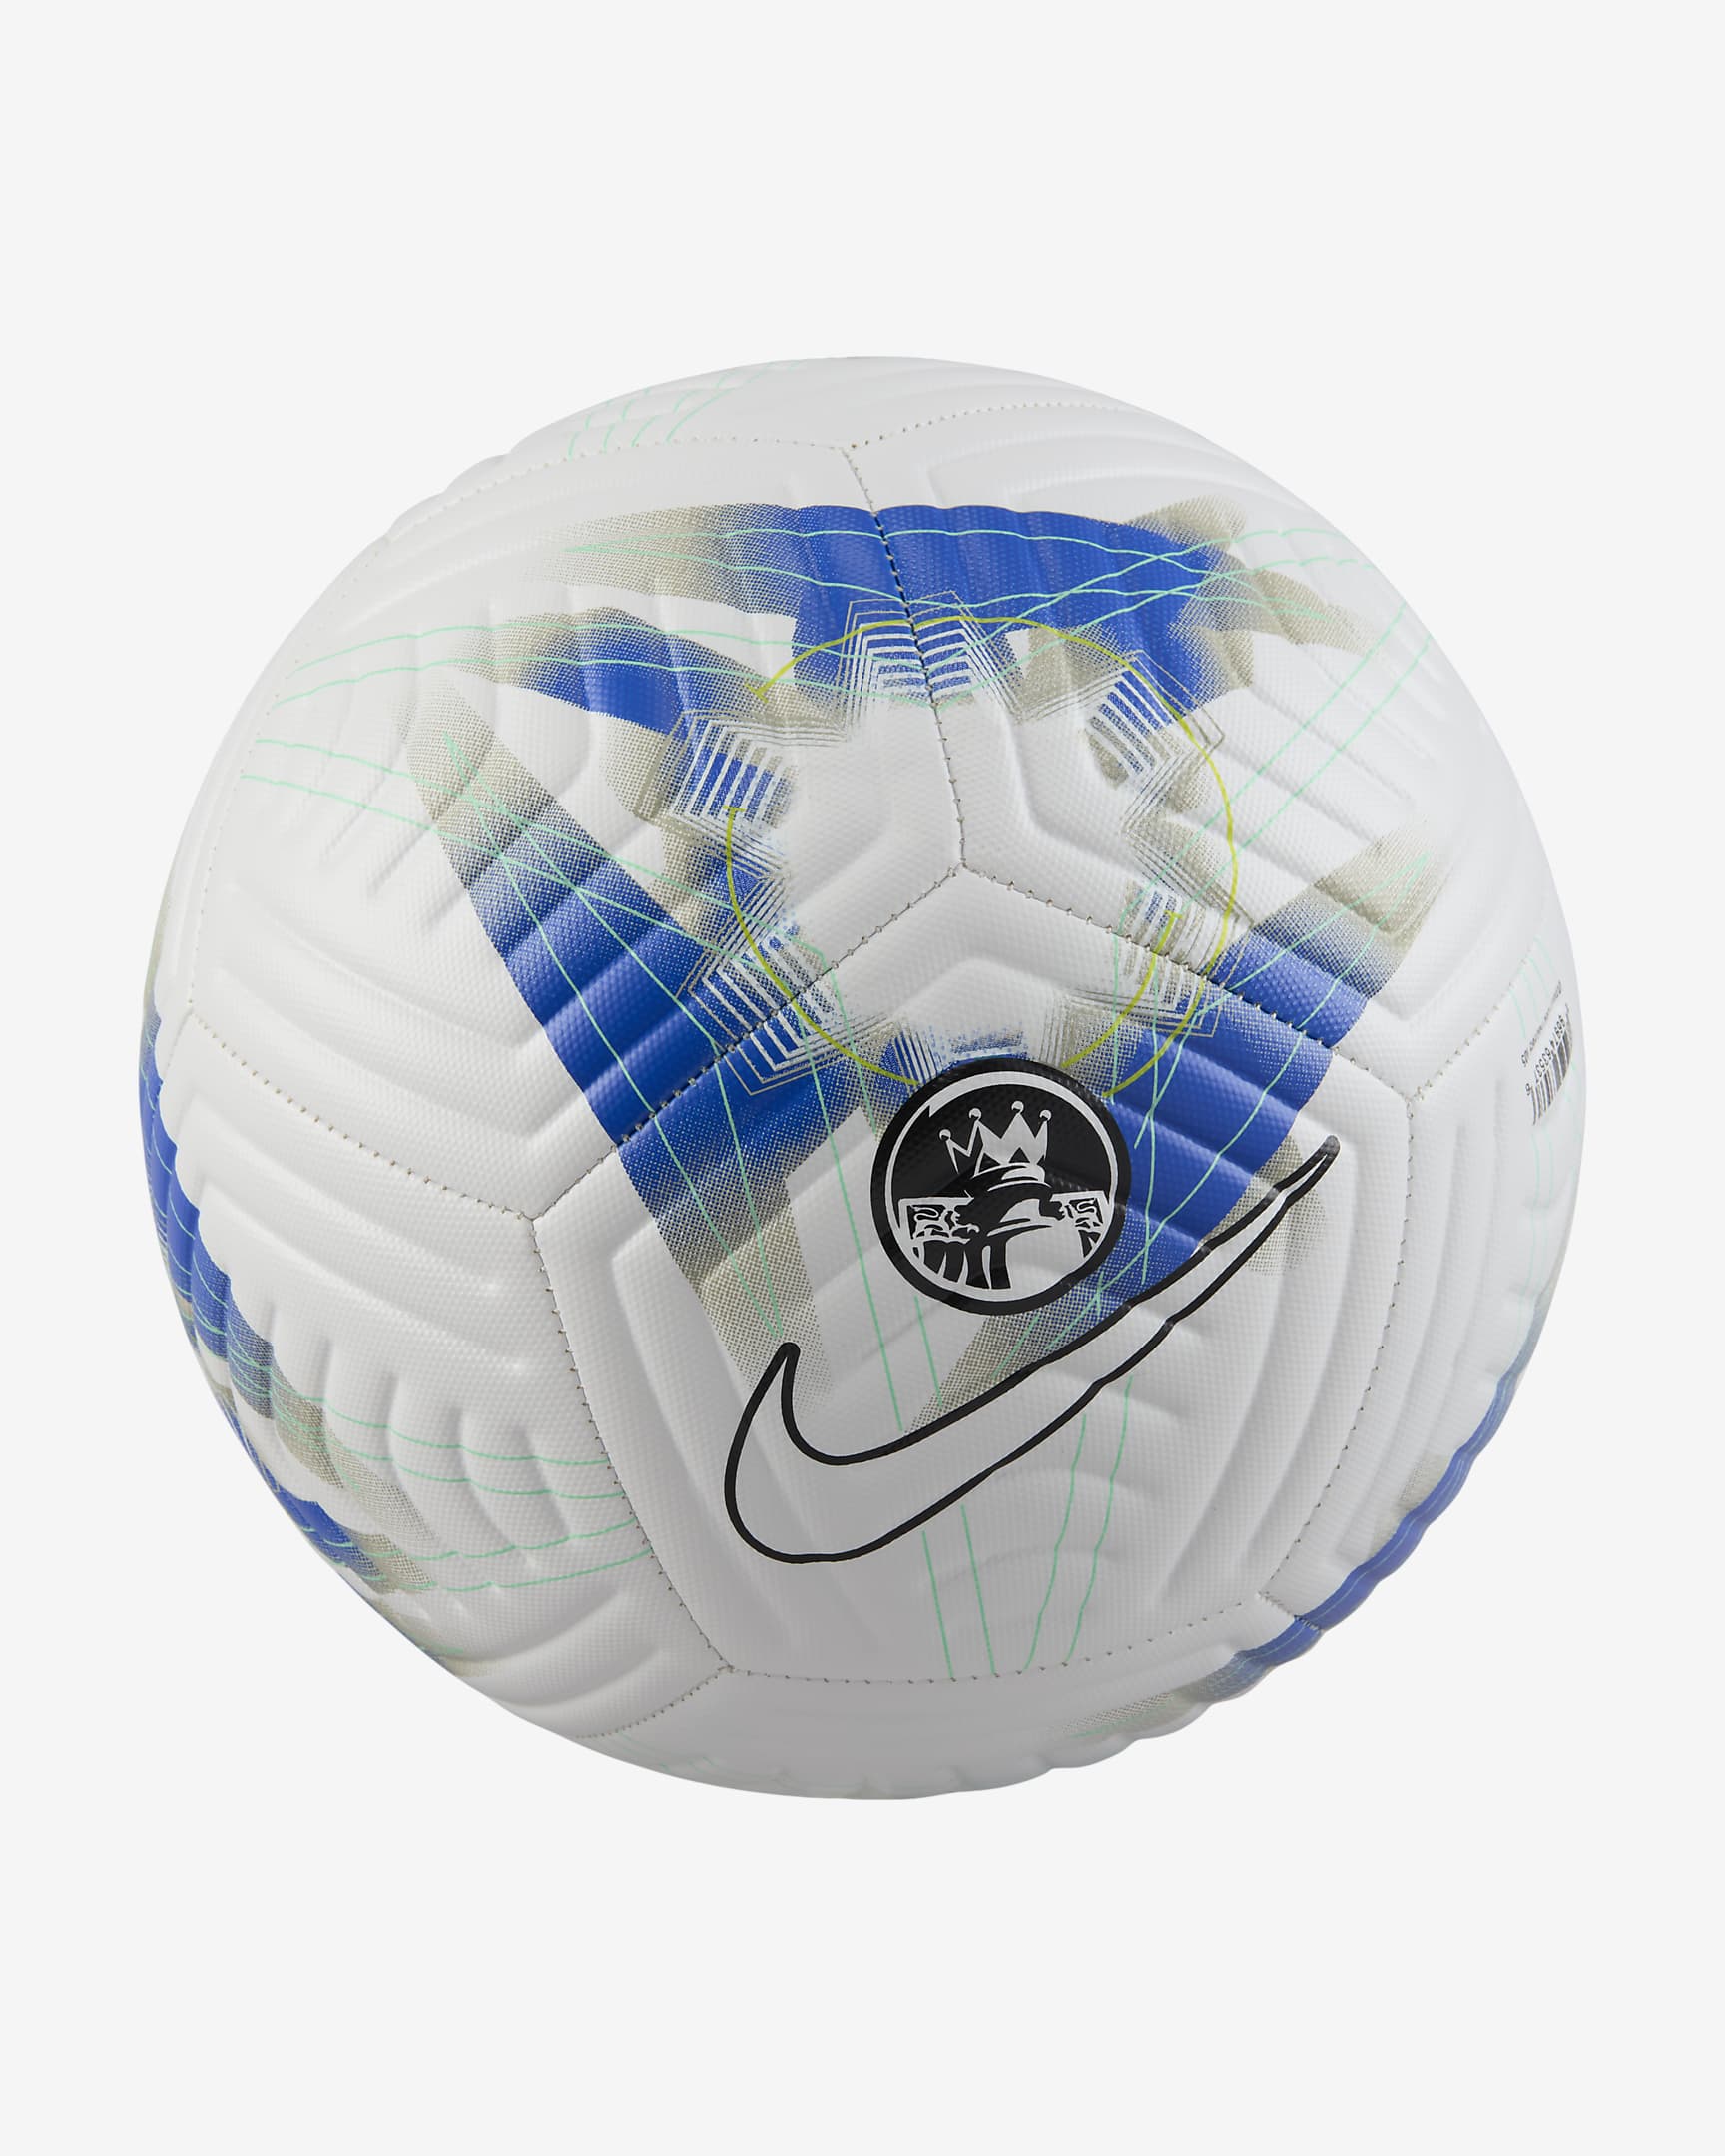 Premier League Academy Soccer Ball - White/Racer Blue/White